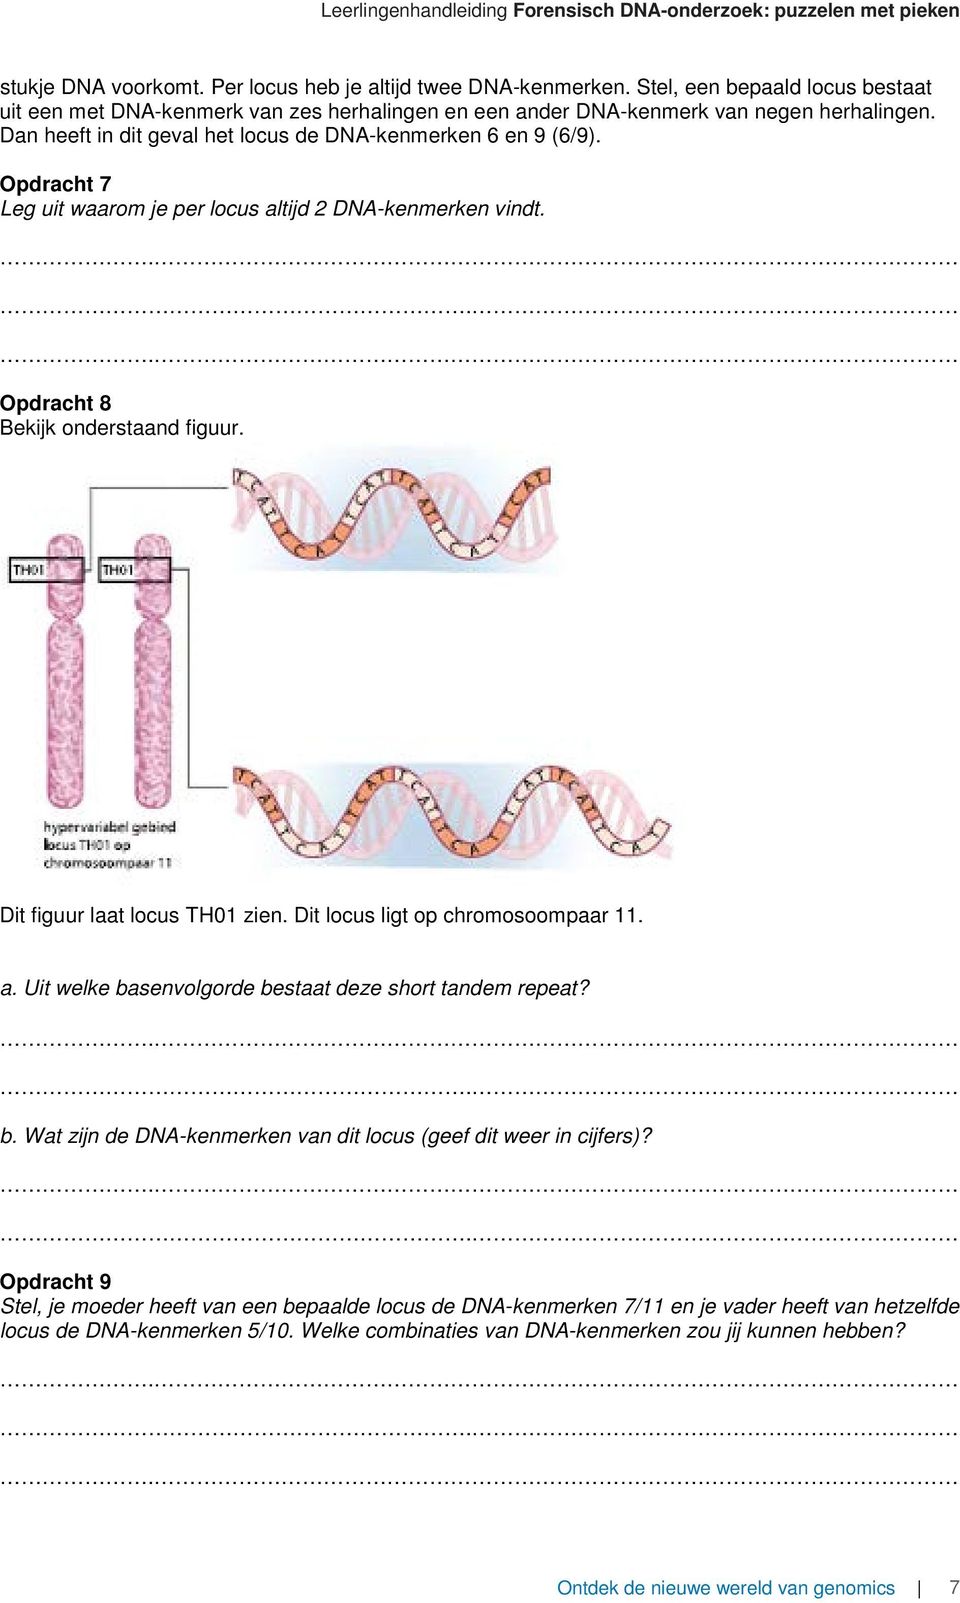 Dit figuur laat locus TH01 zien. Dit locus ligt op chromosoompaar 11. a. Uit welke basenvolgorde bestaat deze short tandem repeat? b. Wat zijn de DNA-kenmerken van dit locus (geef dit weer in cijfers)?